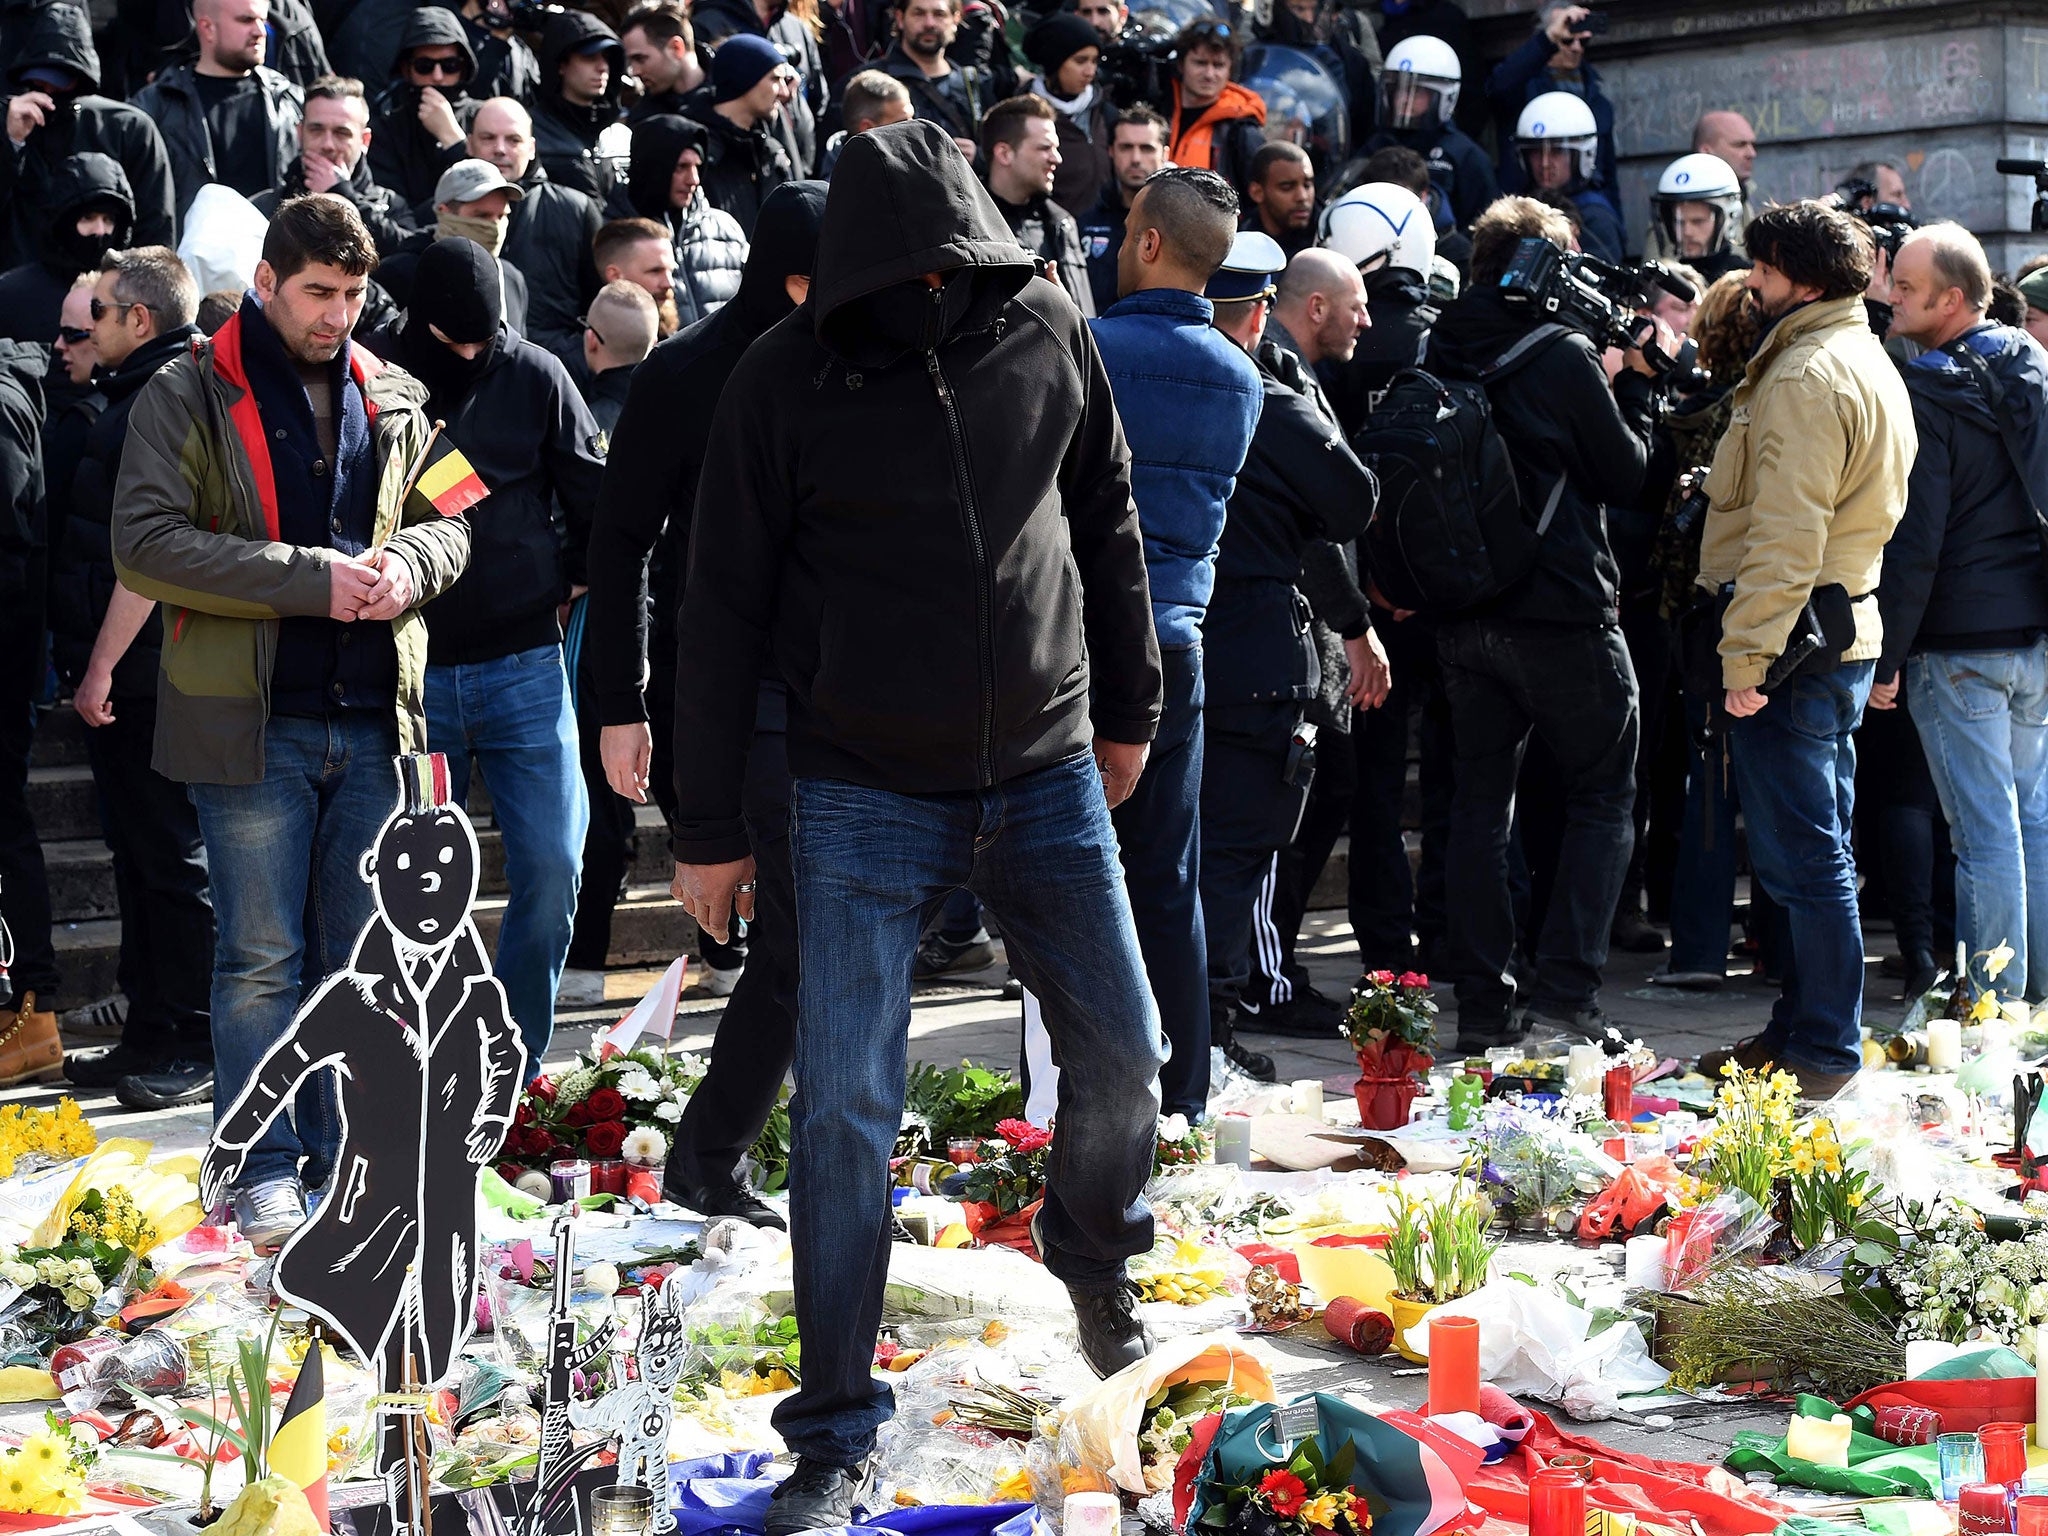 A far-right protester treads on floral tributes in Place de la Bourse